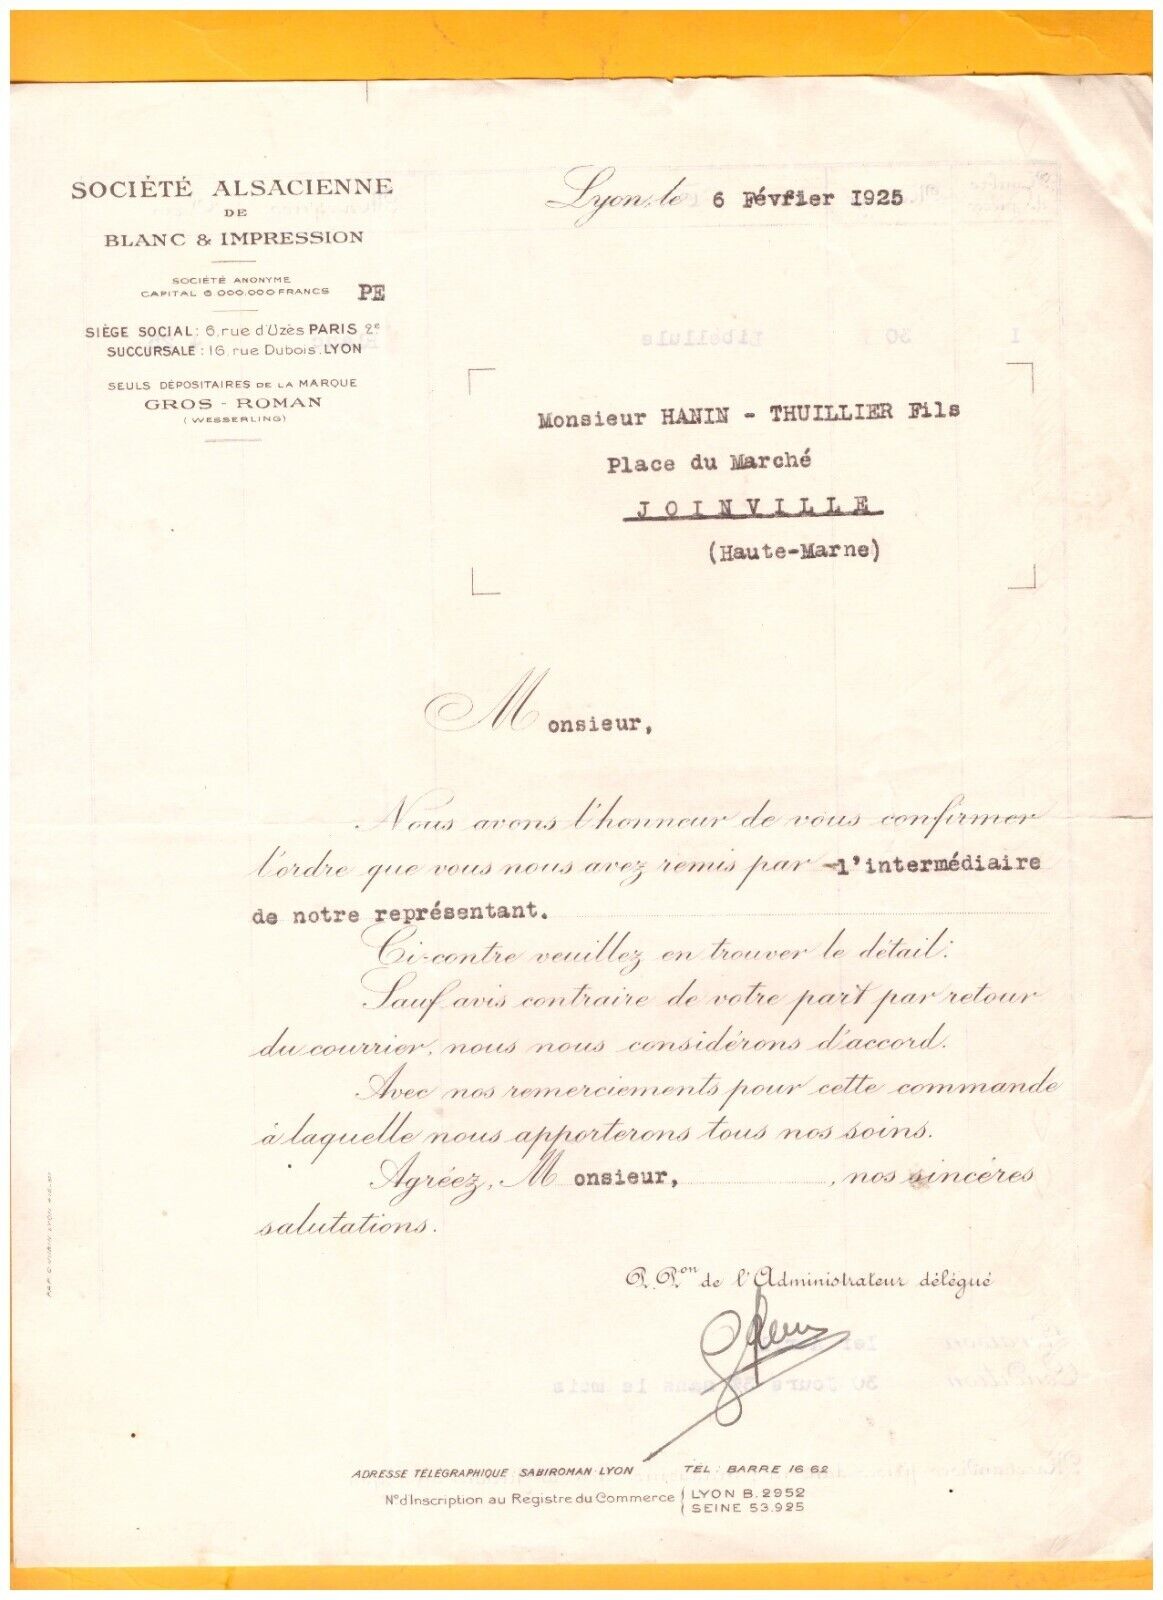 LYON (69) Société ALSACIENNE DE BLANC & IMPRESSION "GROS - ROMAN" en 1925